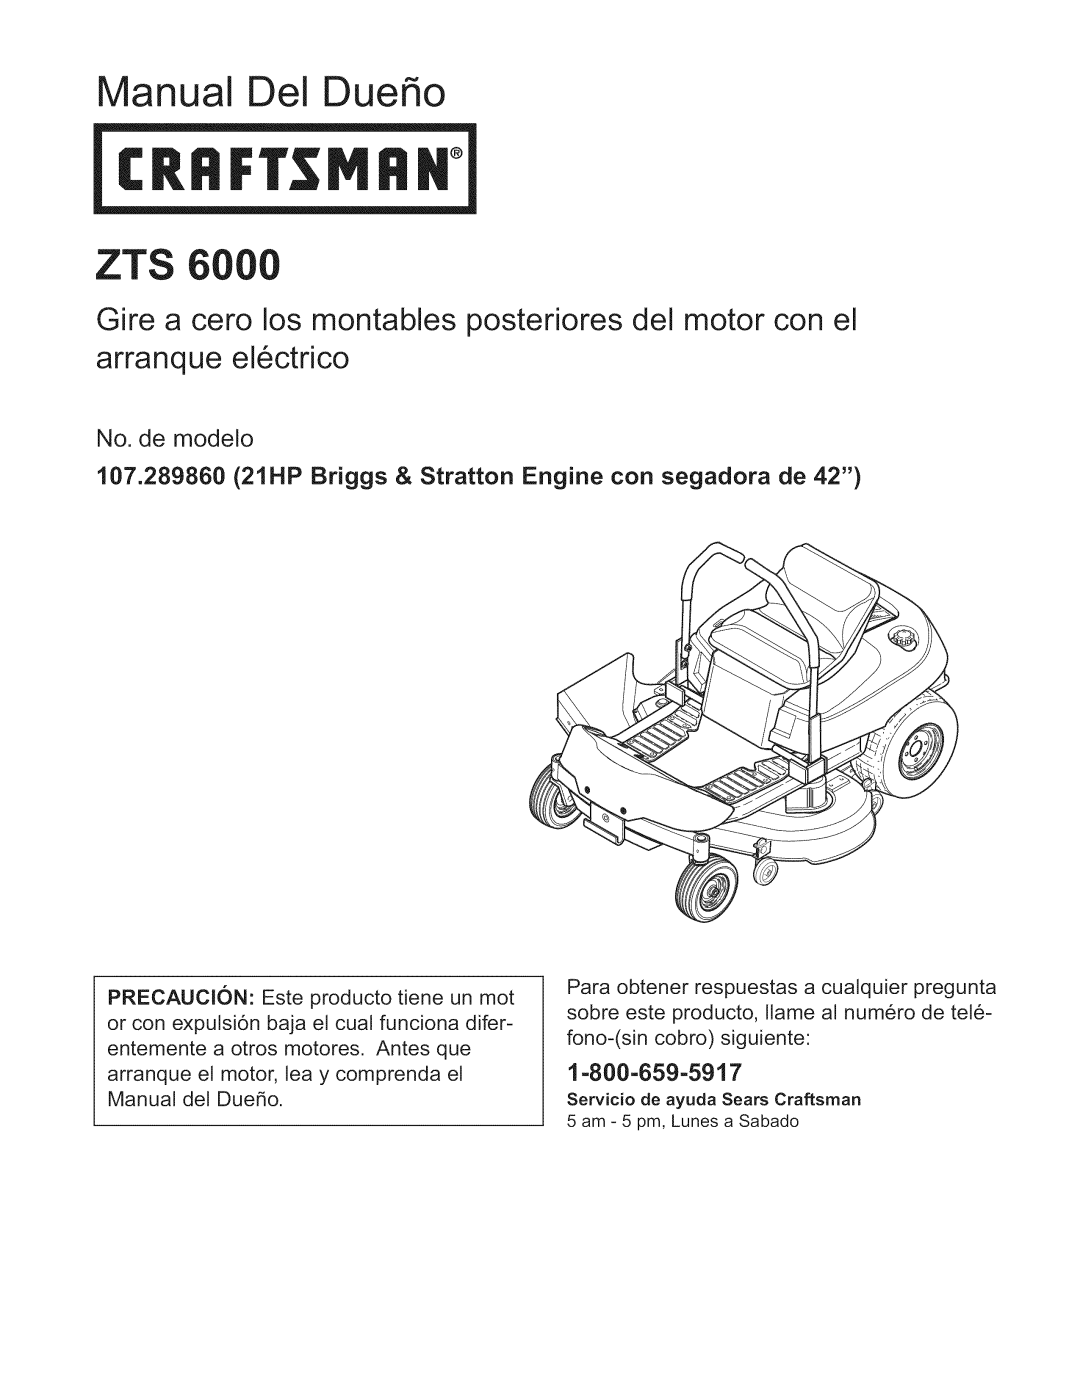 Craftsman 107.289860, ZTS 6000 manual No. de modelo, anual Del Due o, 1-800-659-5917 